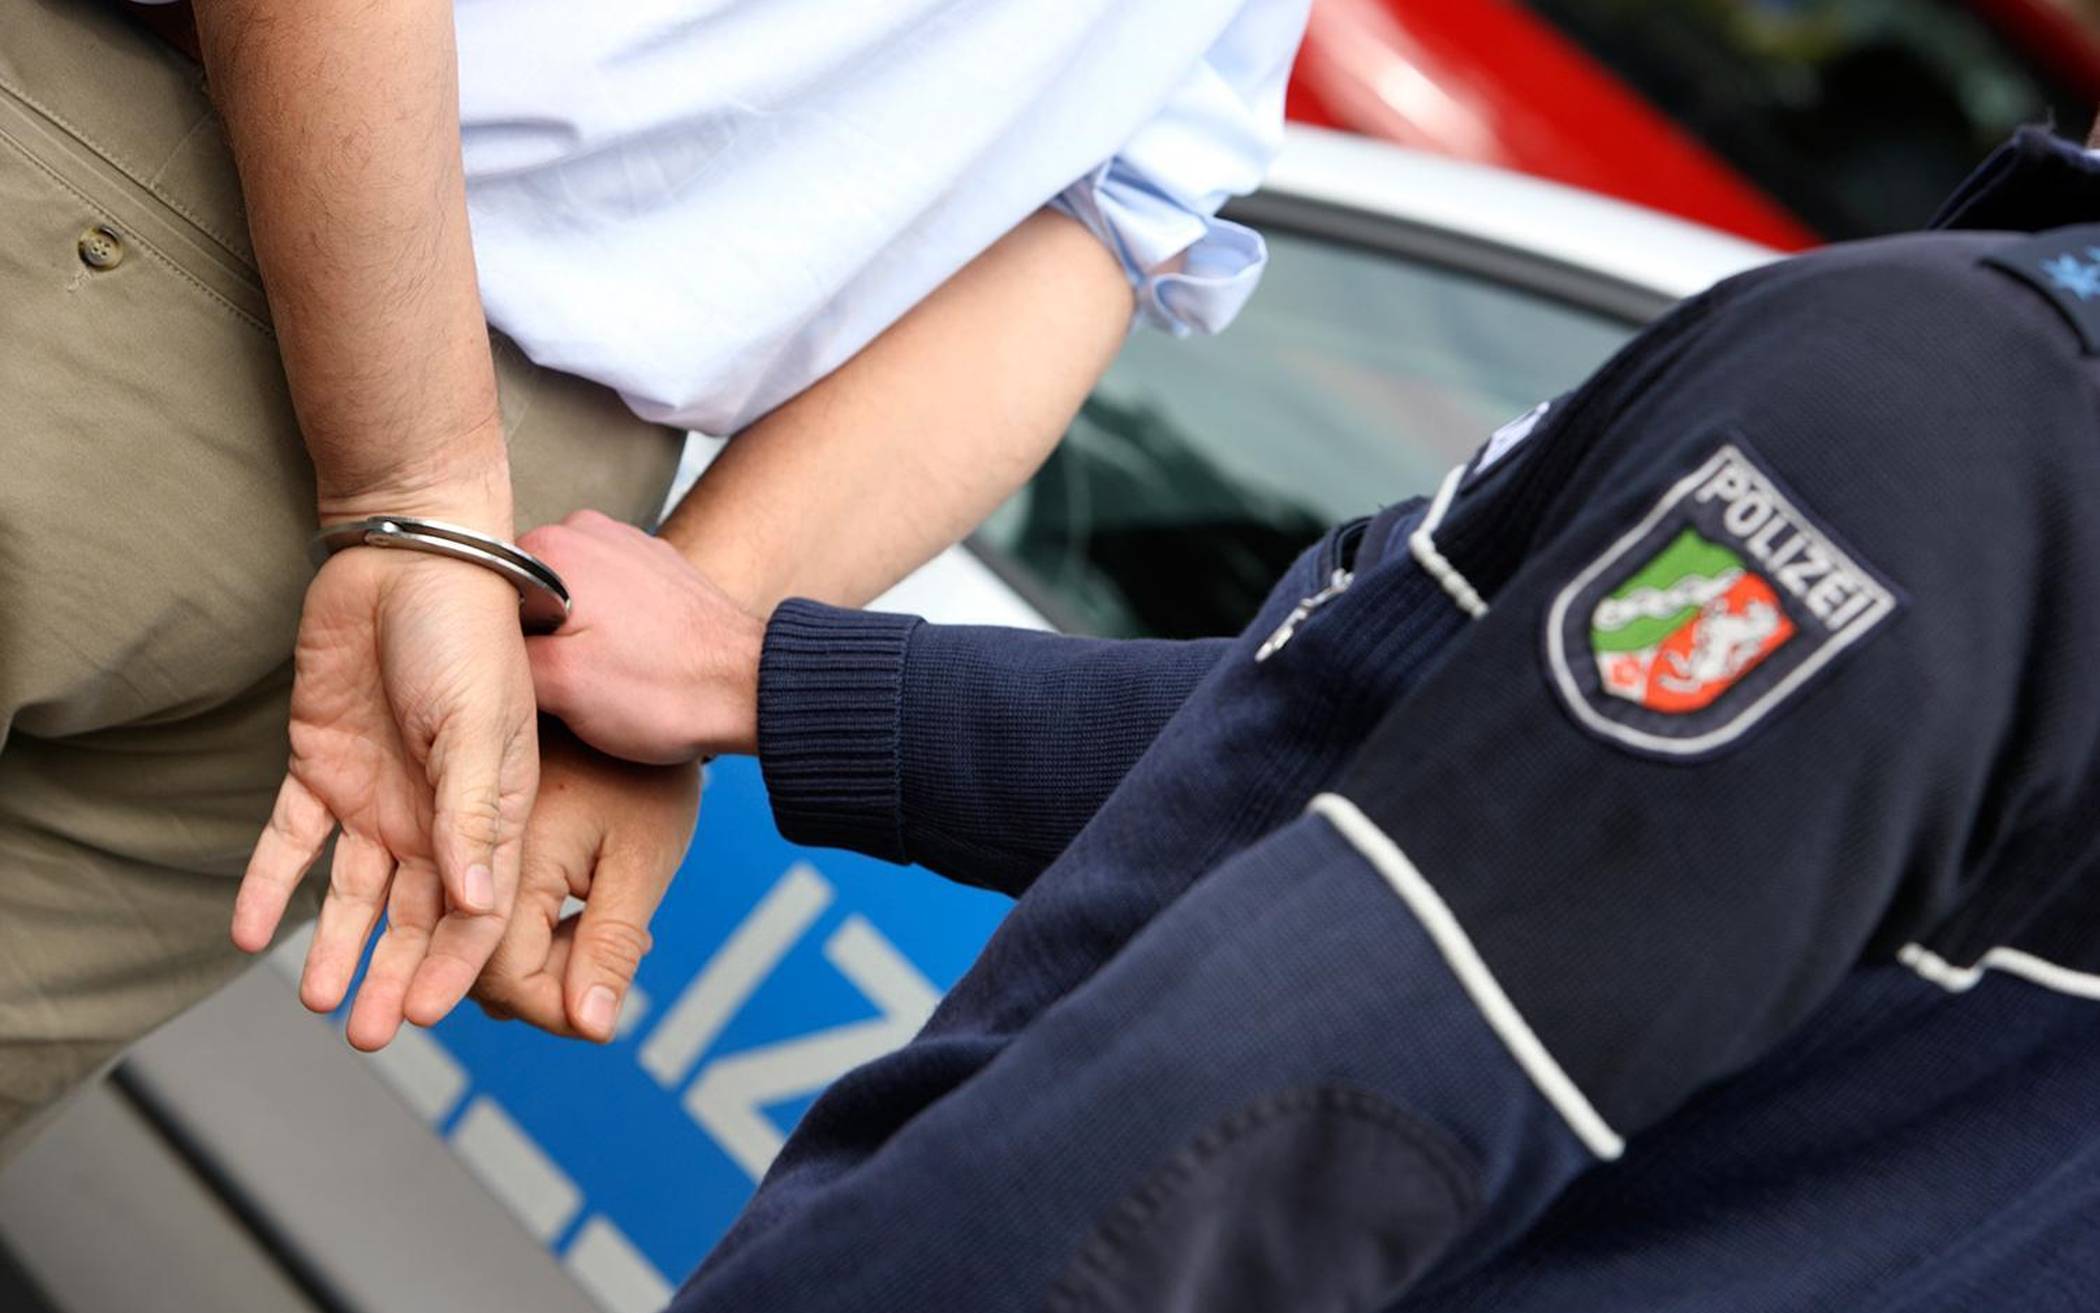 Bundespolizei vollstreckt U-Haftbefehl gegen jugendlichen Brandstifter: 17-jähriger mutmaßlicher Brandstifter am Flughafen festgenommen